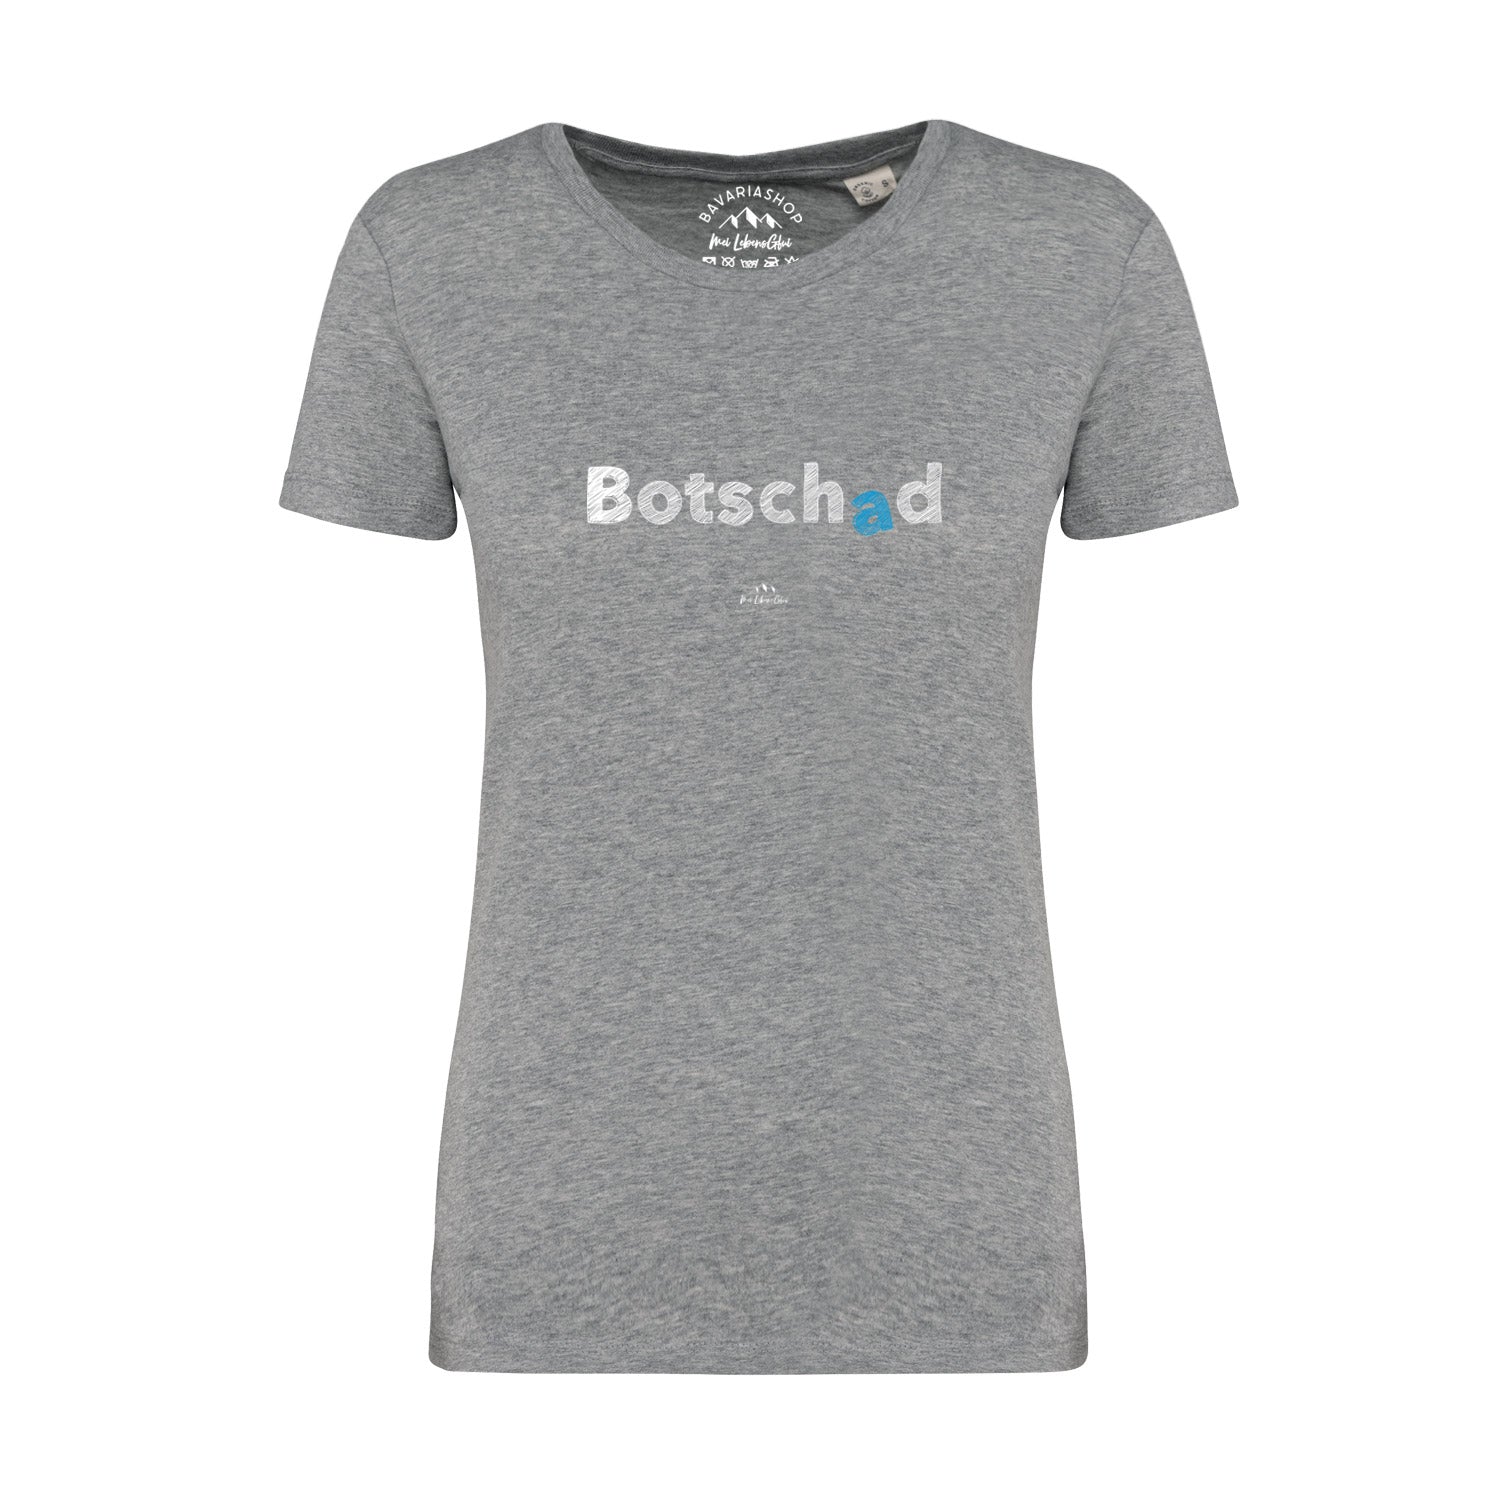 Damen T-Shirt "Botschad"